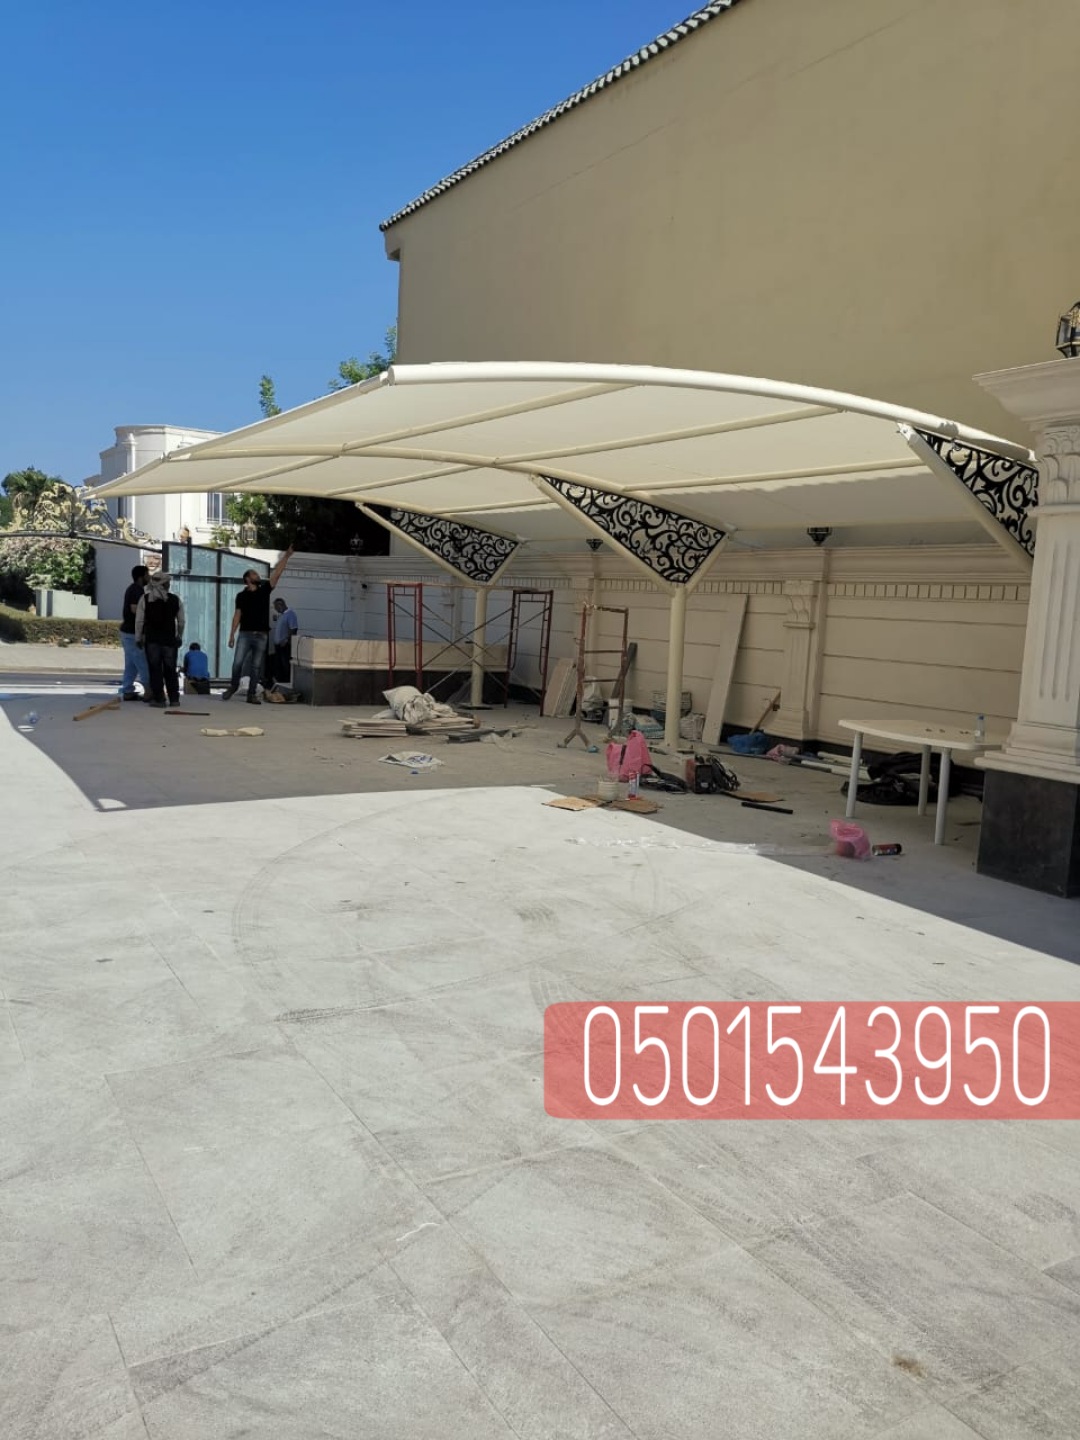 انواع مظلات السيارات في الرياض , 0501543950 P_23606b42g10